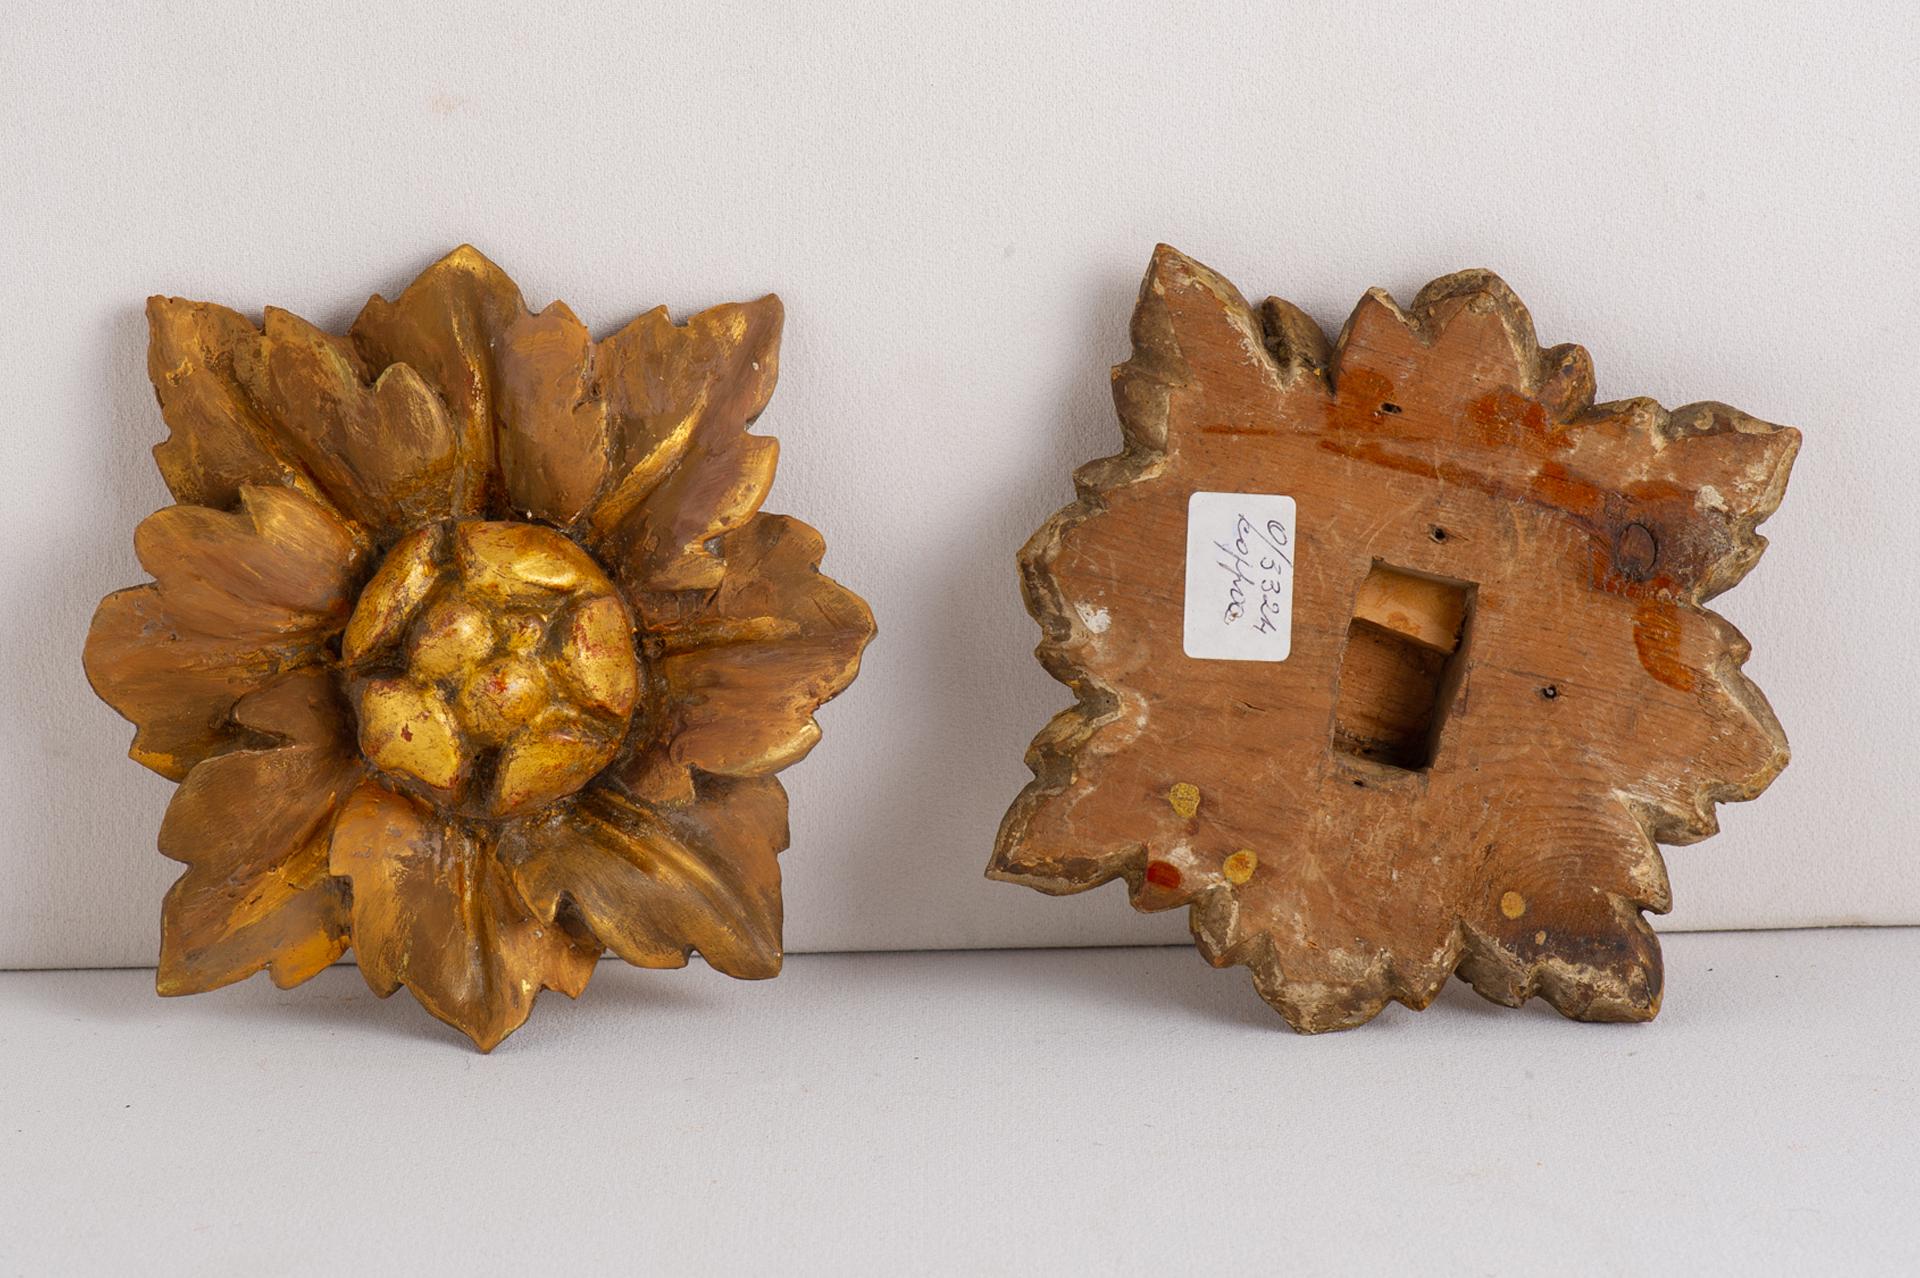 Paar antike Friese aus Holz in Form einer Blume. Sie tragen Spuren der Lackierung, die von der Zeit ausgelöscht wurden. Ich habe gerade den mittleren Teil erneuern lassen, um wieder etwas Licht zu bekommen.
Sie sind wunderschön auf einem Tisch oder